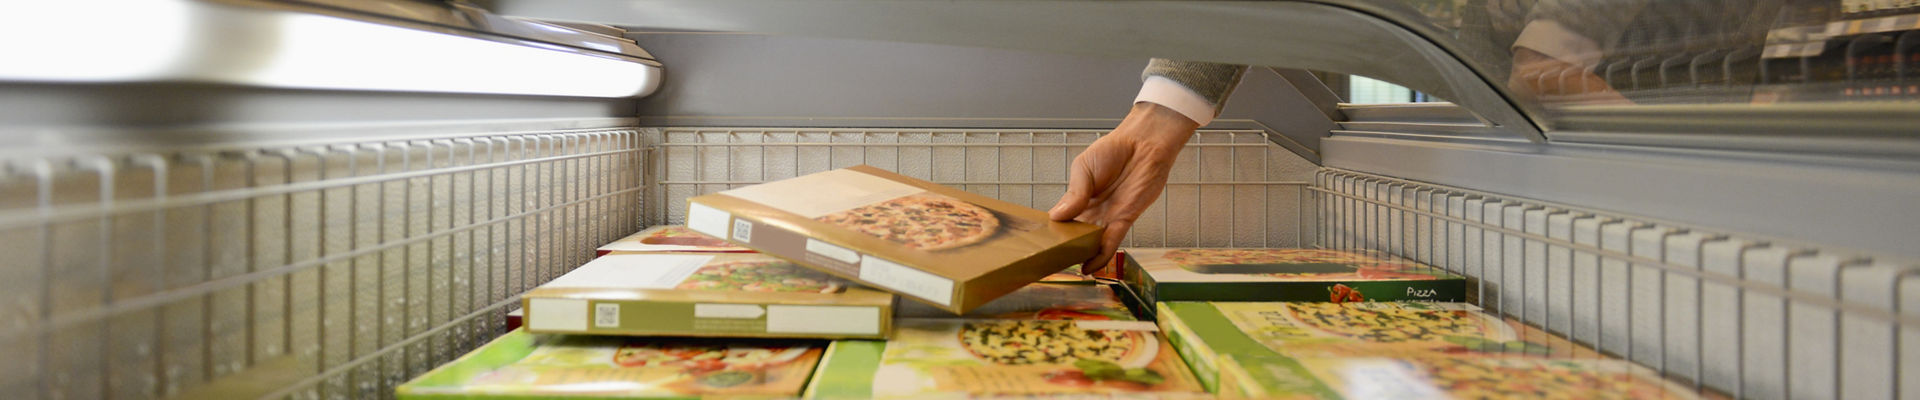 Homem selecionando uma pizza congelada de uma caixa de freezer em um supermercado e AFFINITY™ GA logo